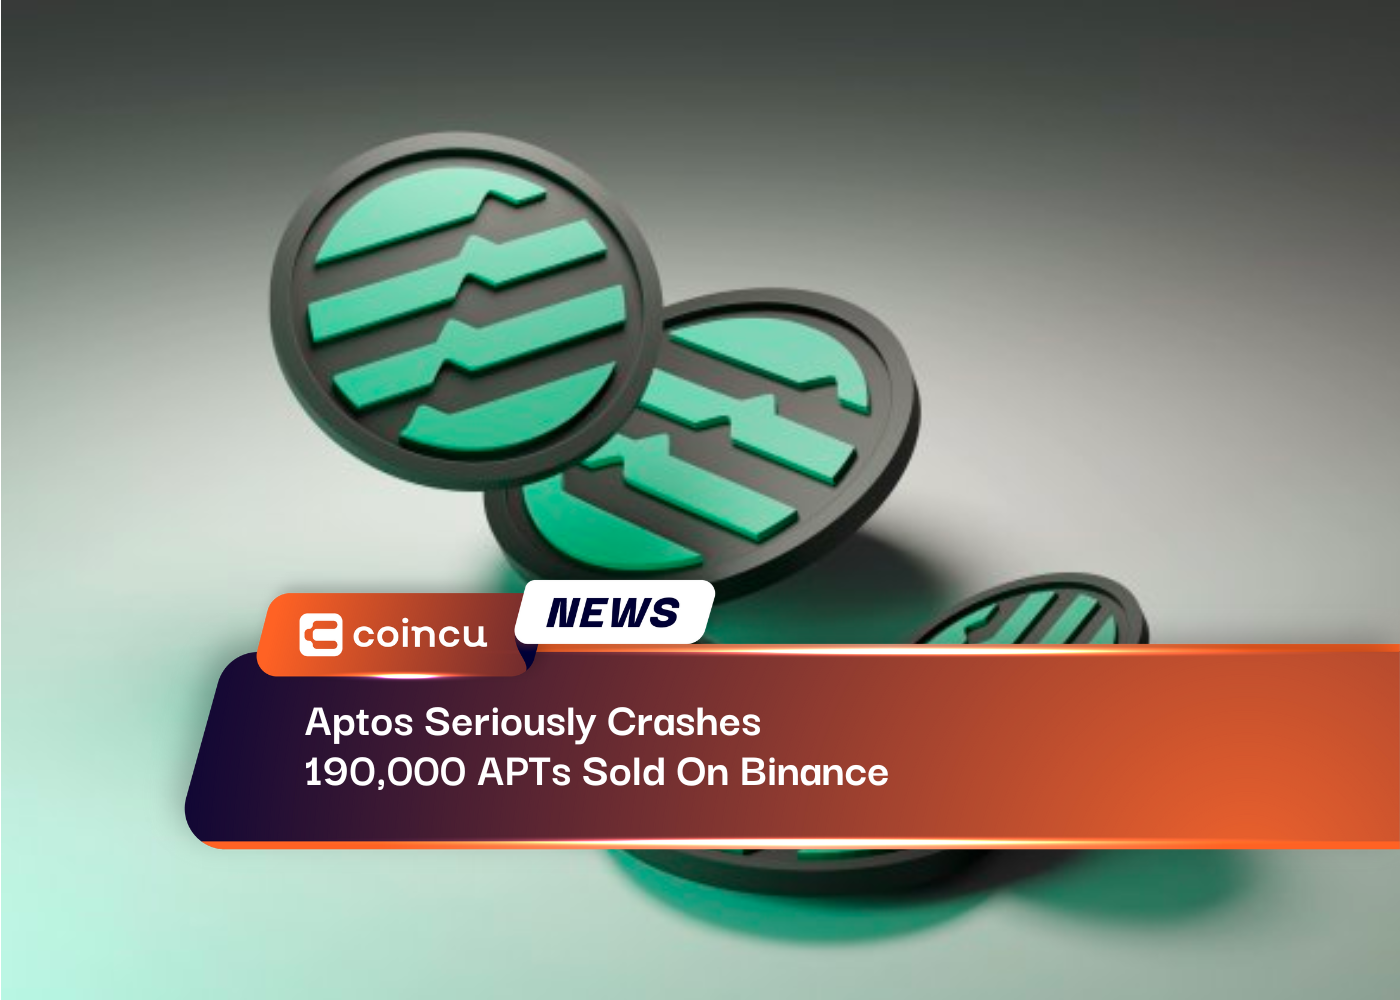 Aptos серьезно обрушил 190,000 XNUMX APT, проданных на Binance